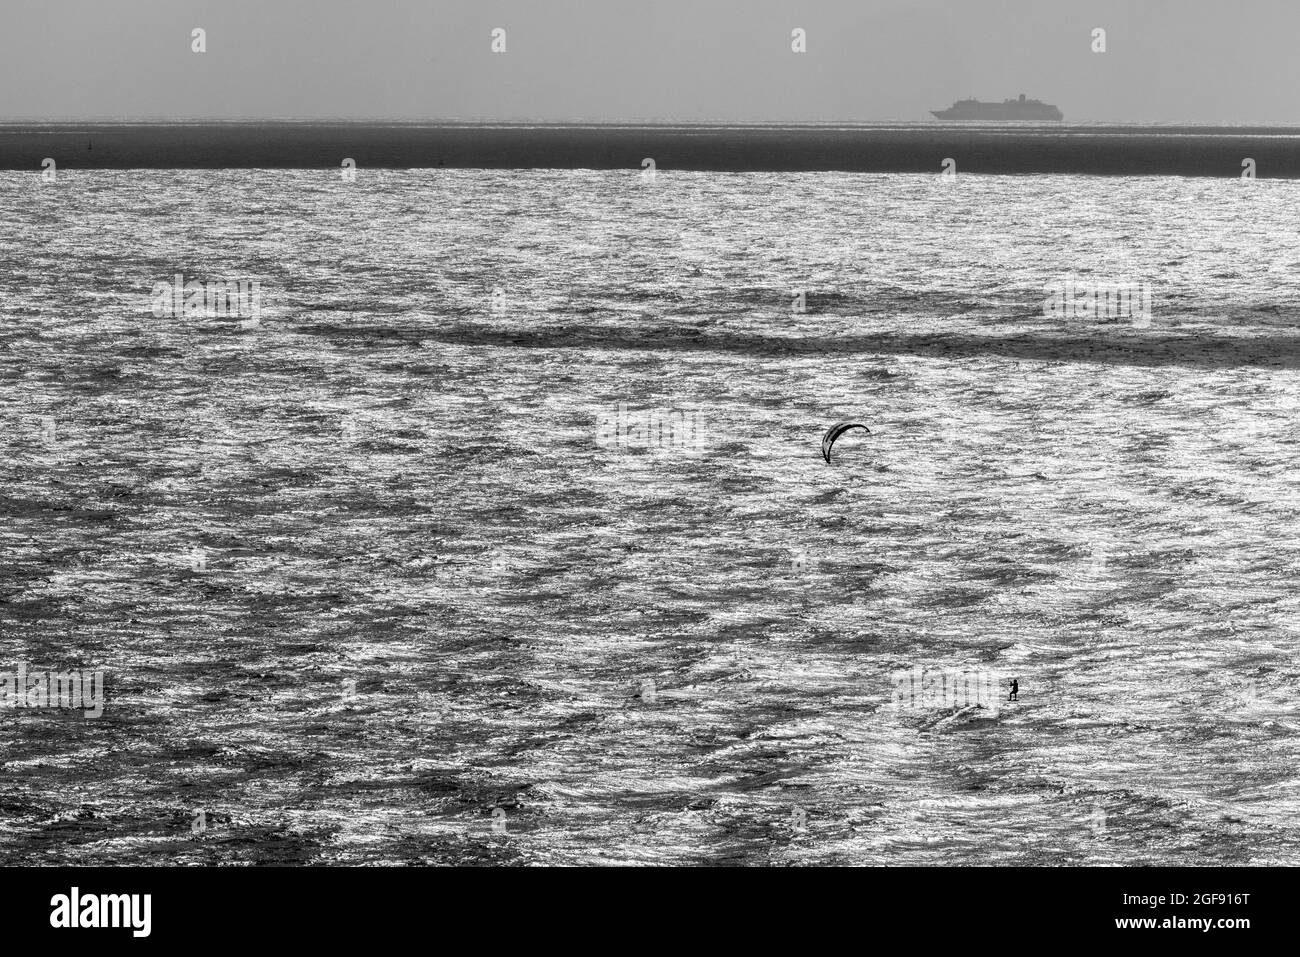 Un kite-surfer solista solleva dall'acqua durante le buone condizioni a Ramsgate mentre una grande nave viaggia più lontano verso il mare, Ramsgate, agosto 2021 Foto Stock